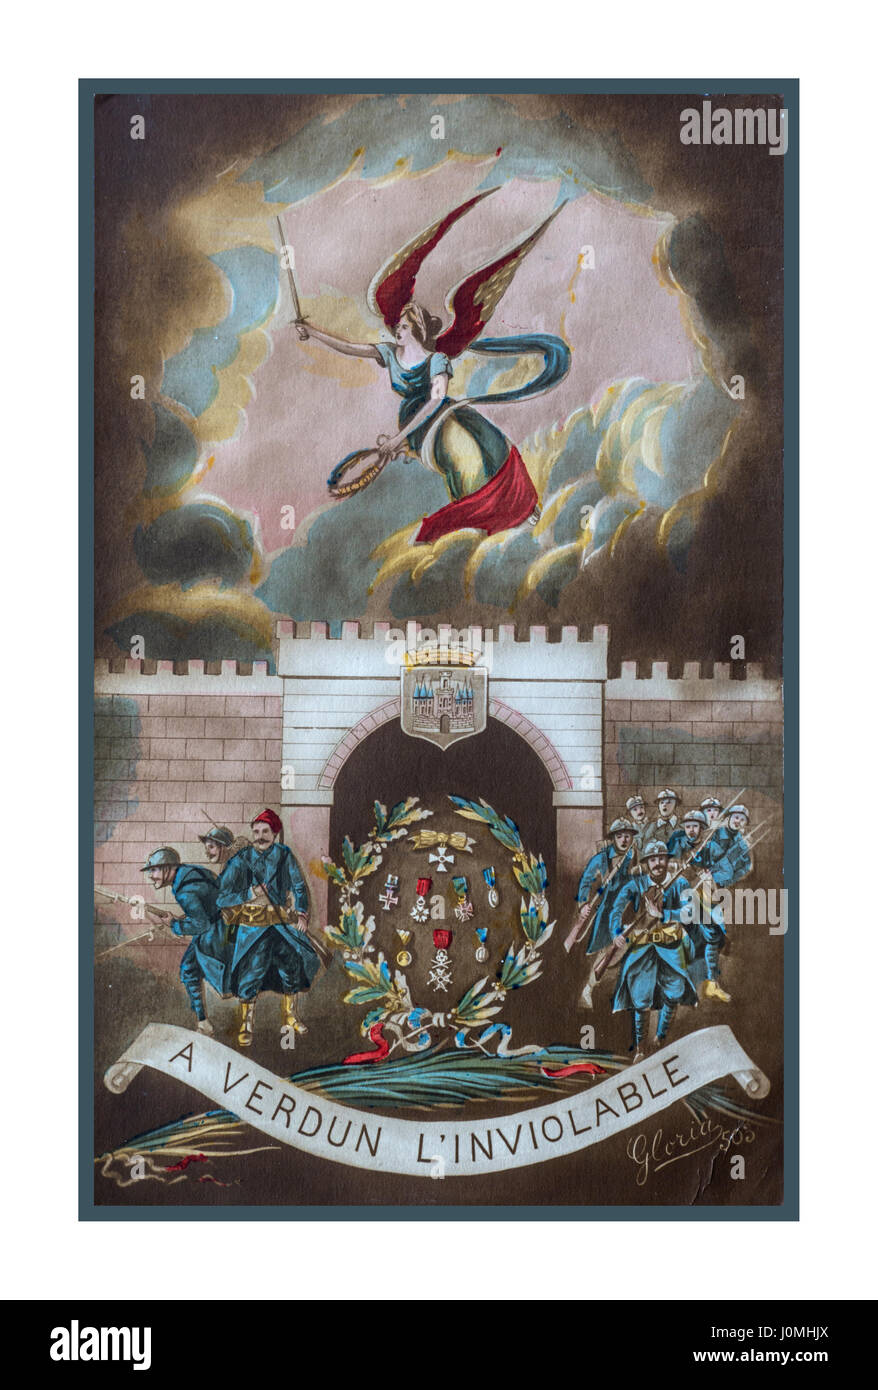 VERDUN WW1 carte postale de propagande de la célèbre ligne de front à Verdun, France, d'un soldat d'envoyer le message d'agitation que Verdun est inviolable Banque D'Images